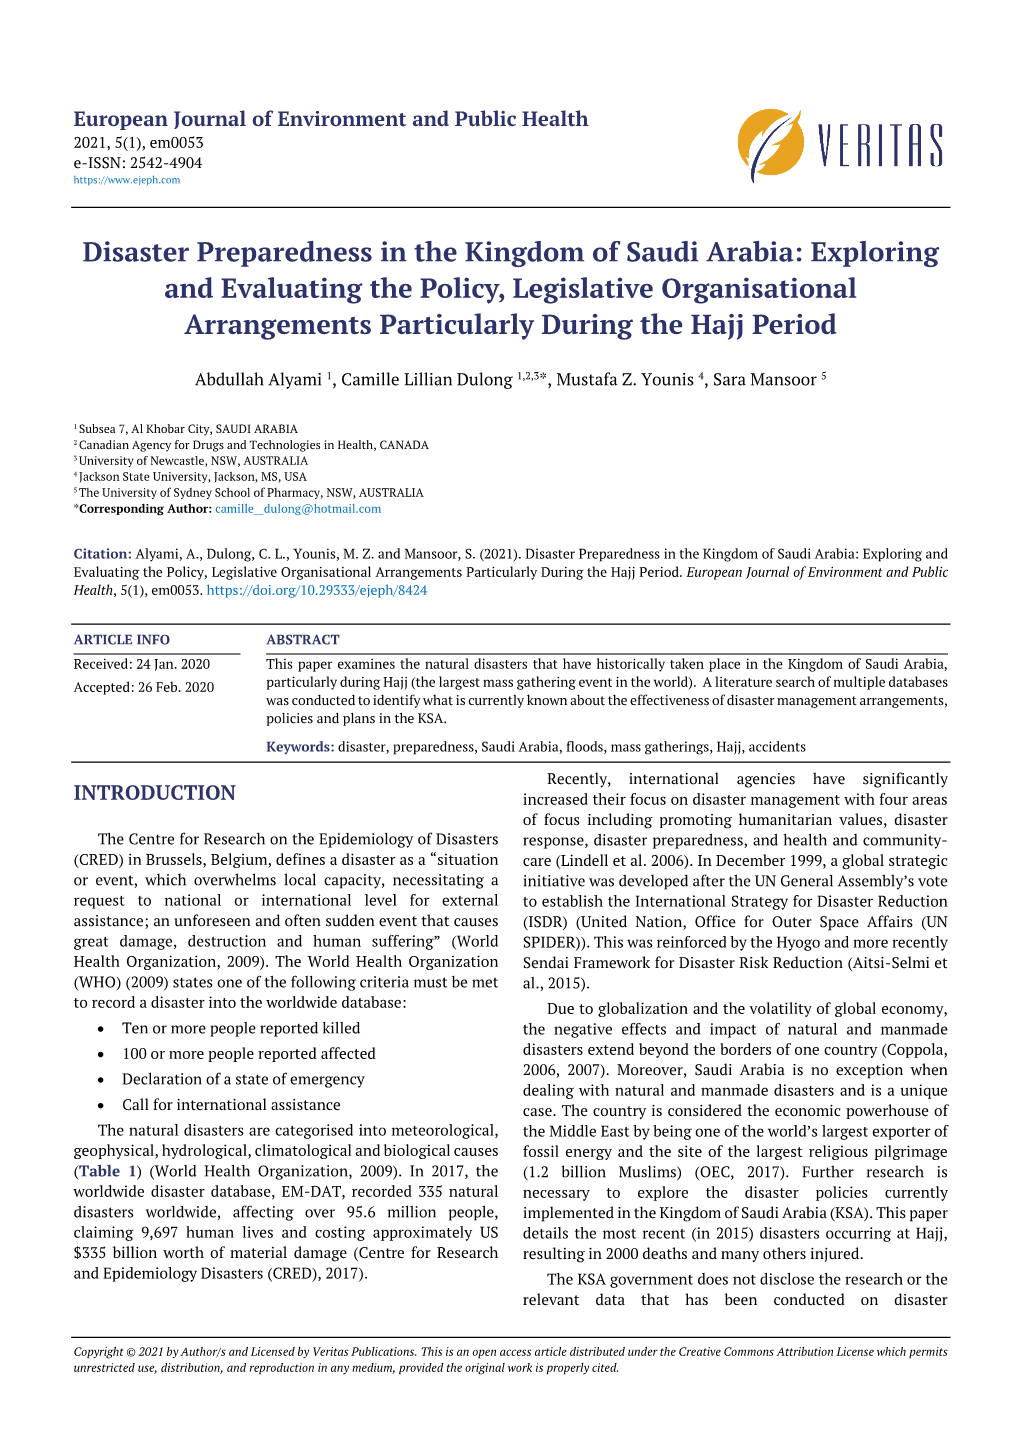 Disaster Preparedness in the Kingdom of Saudi Arabia